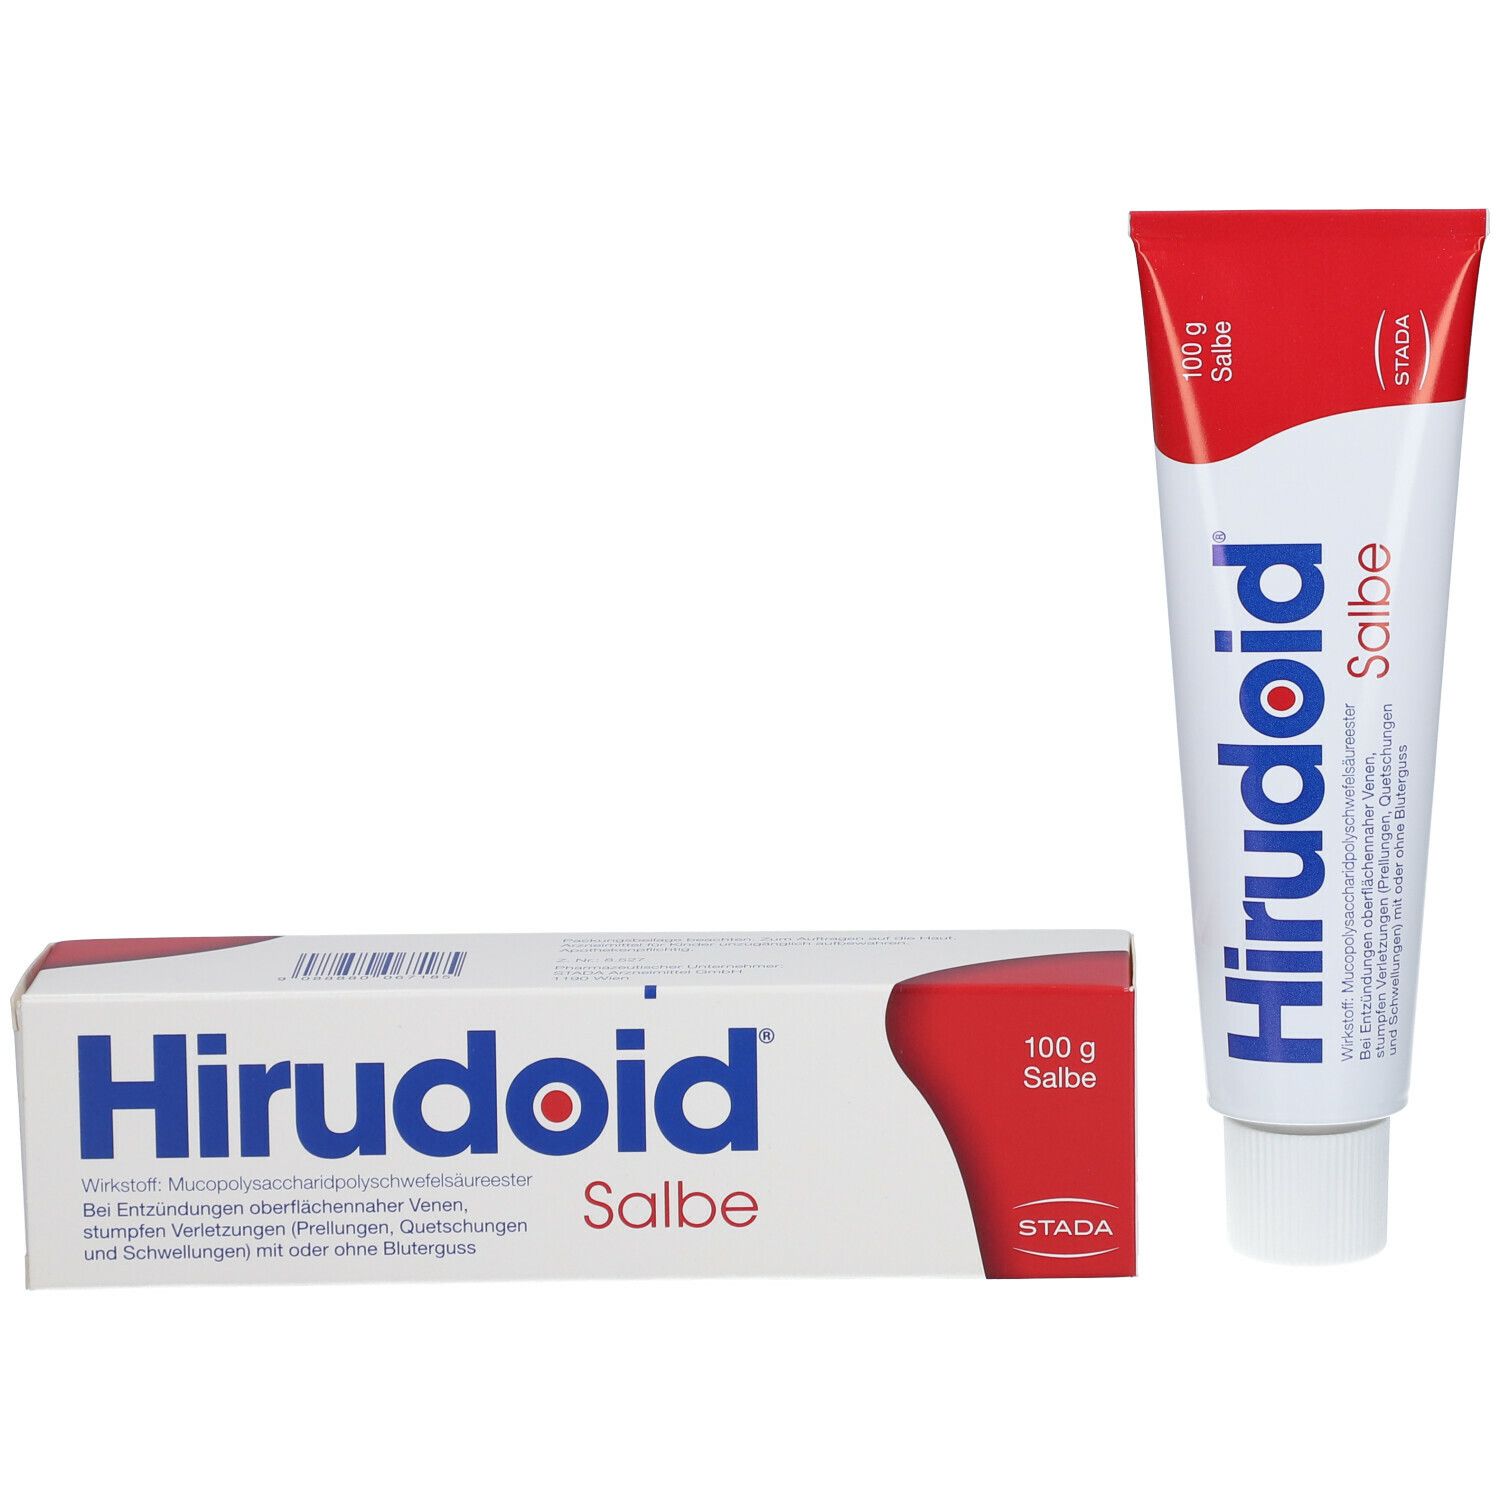 Hirudoid® Salbe bei Venenentzündungen und Blutergüssen